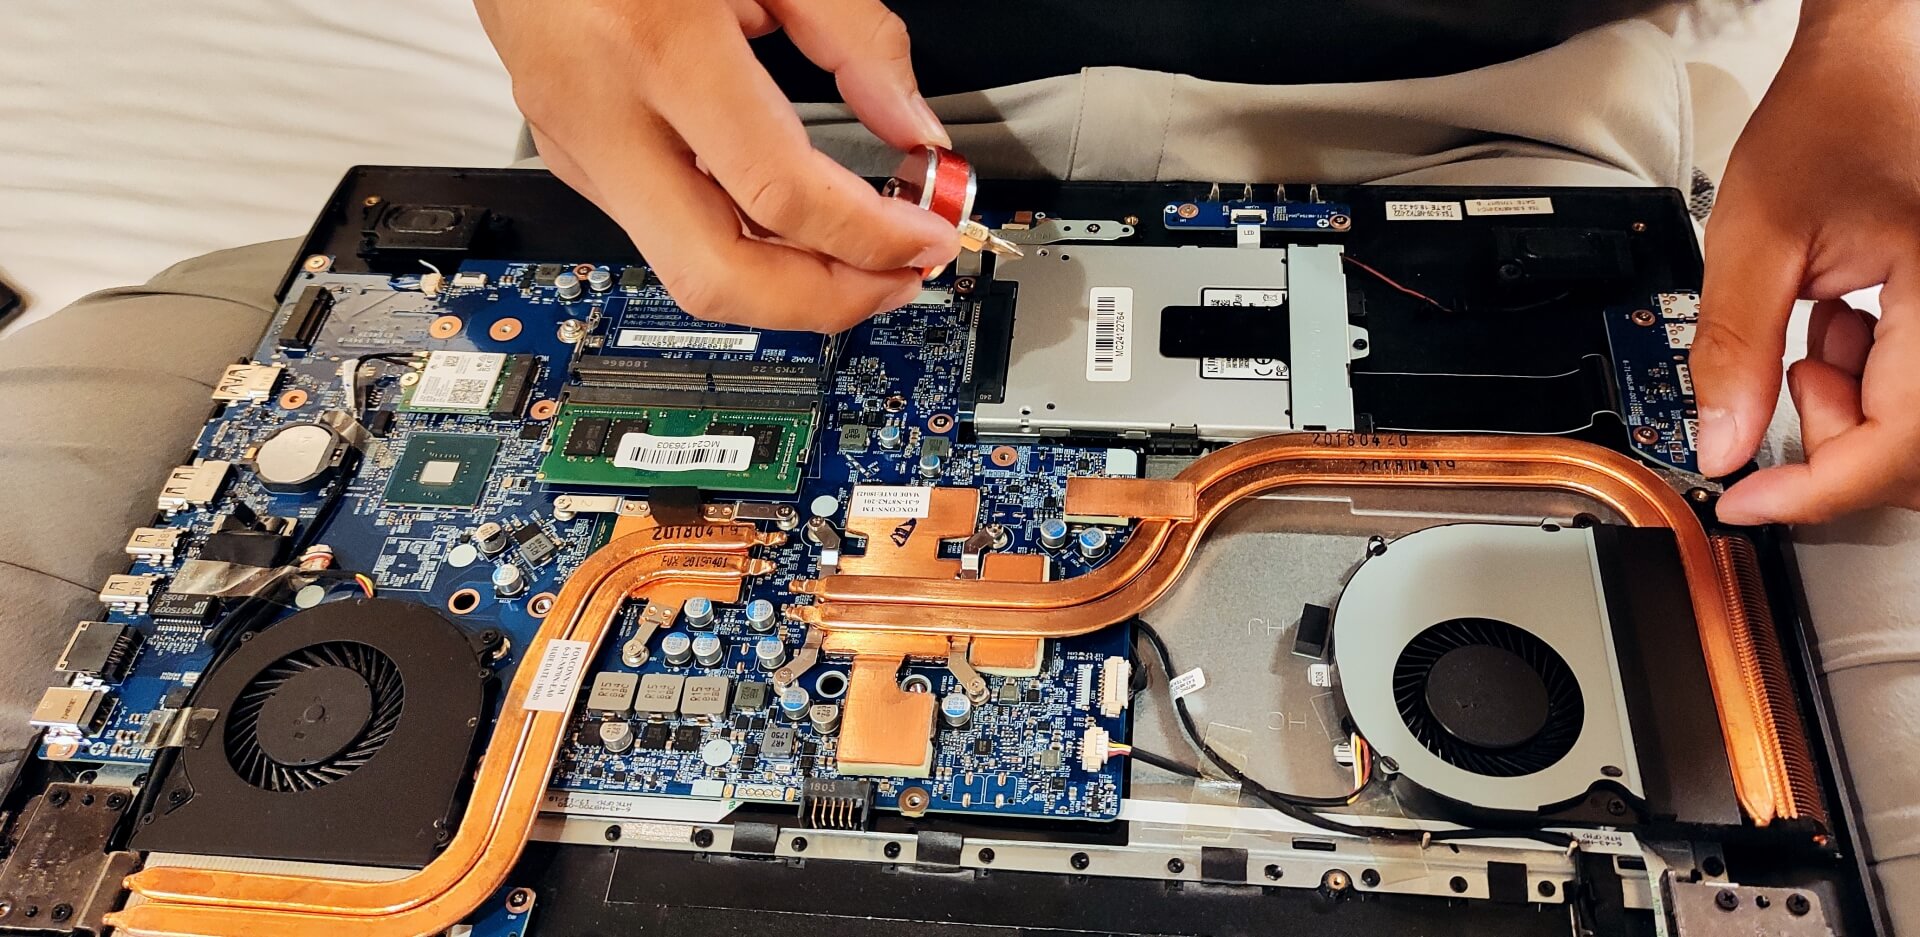 パソコンを修理している人の手元の画像